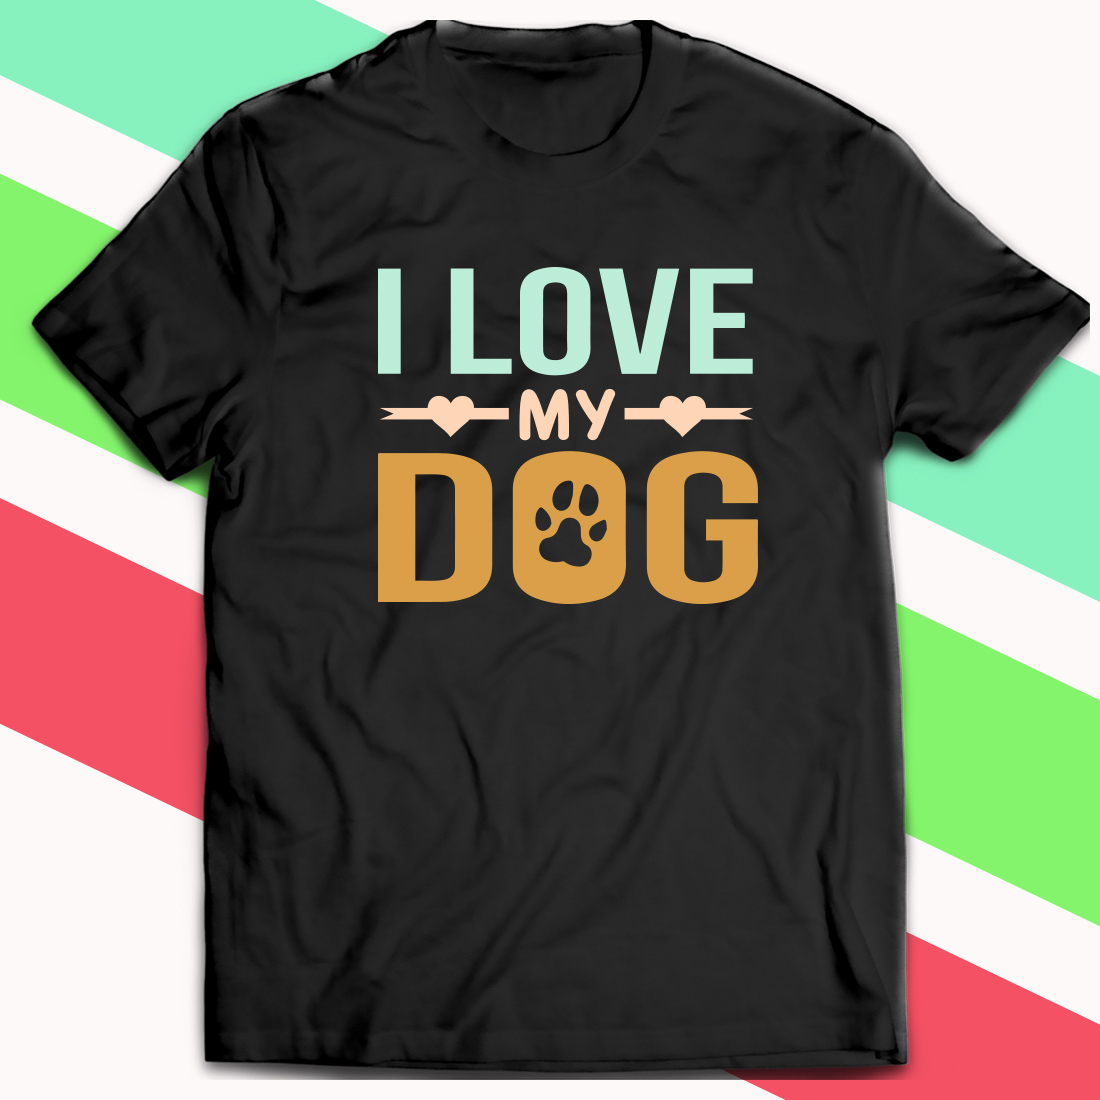 I Love My Dog T-Shirt.